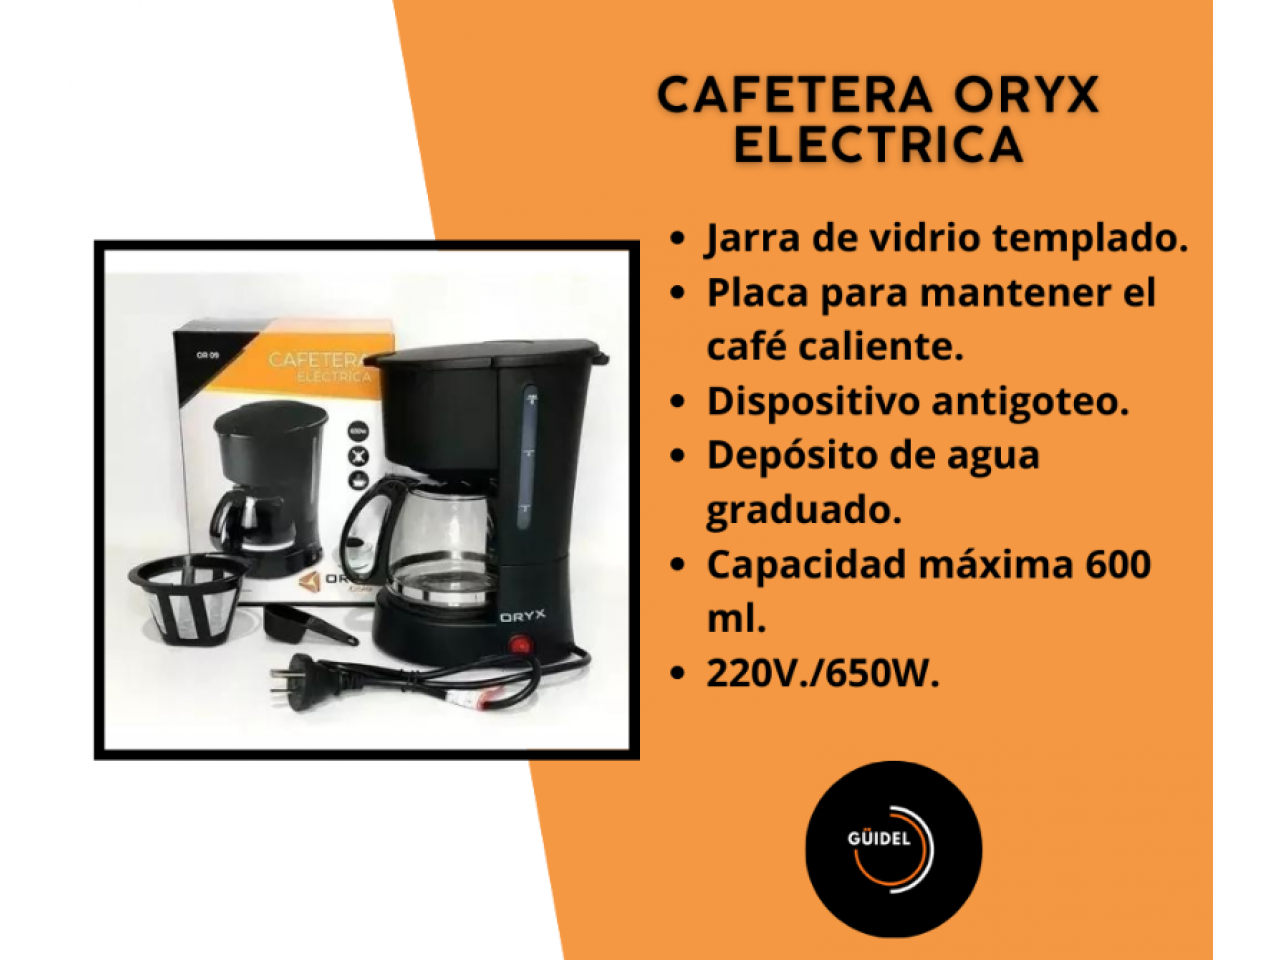 Cafetera italiana Oryx 2 Tazas Inox - Expresso y cafeteras - Los